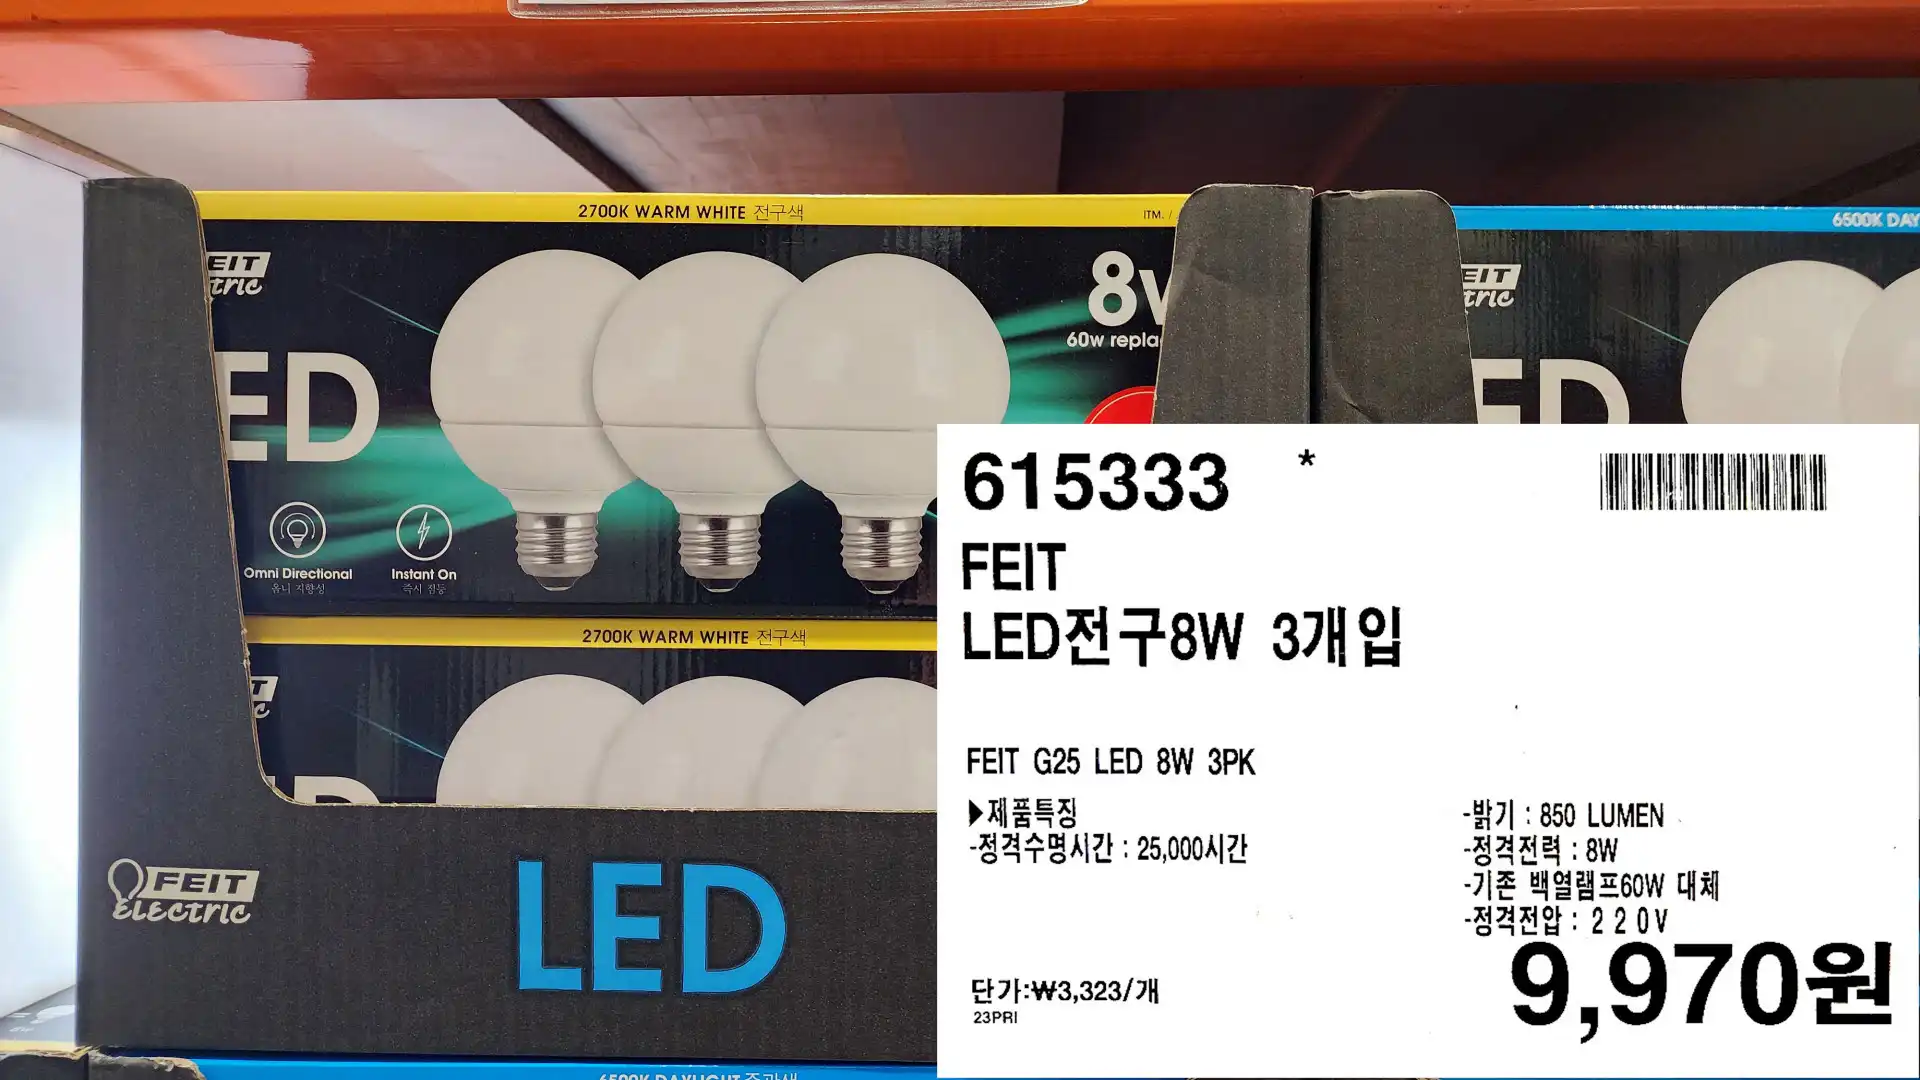 FEIT
LED전구8W 3개입
FEIT G25 LED 8W 3PK
▶ 제품특징
-정격수명시간: 25&#44;000시간
-밝기: 850 LUMEN
-정격전력 : 8W
-기존 백열램프60W 대체
-정격전압 : 220V
9&#44;970원